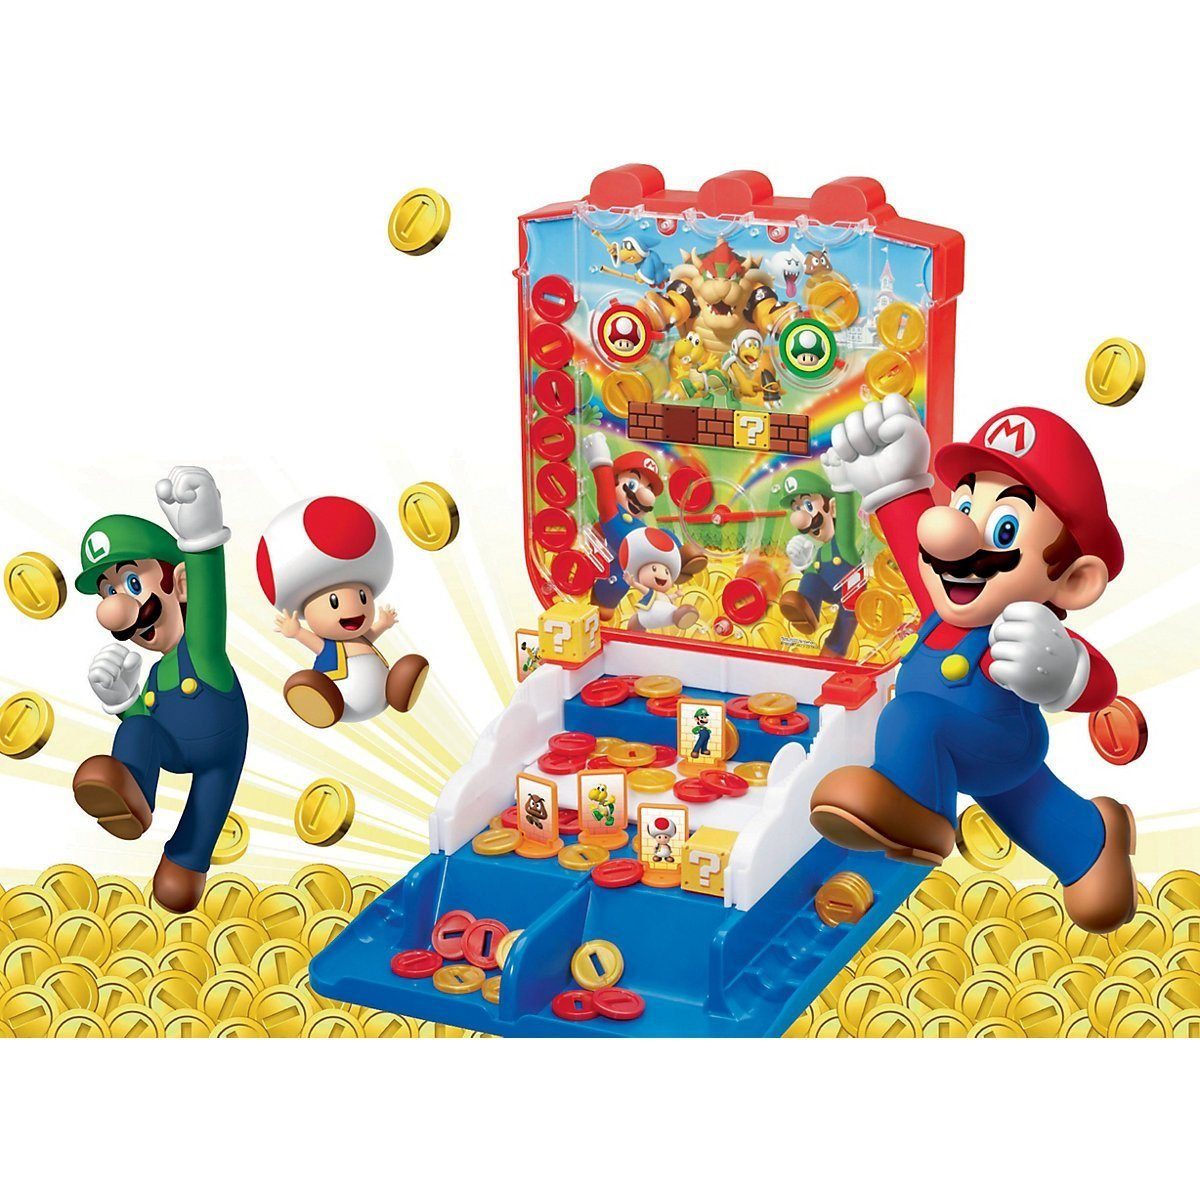 Mario 2 zu bis Super ab 4 "Lucky Jahren Game EPOCH Spieler Coin" Kinderspiel Games Spiel,